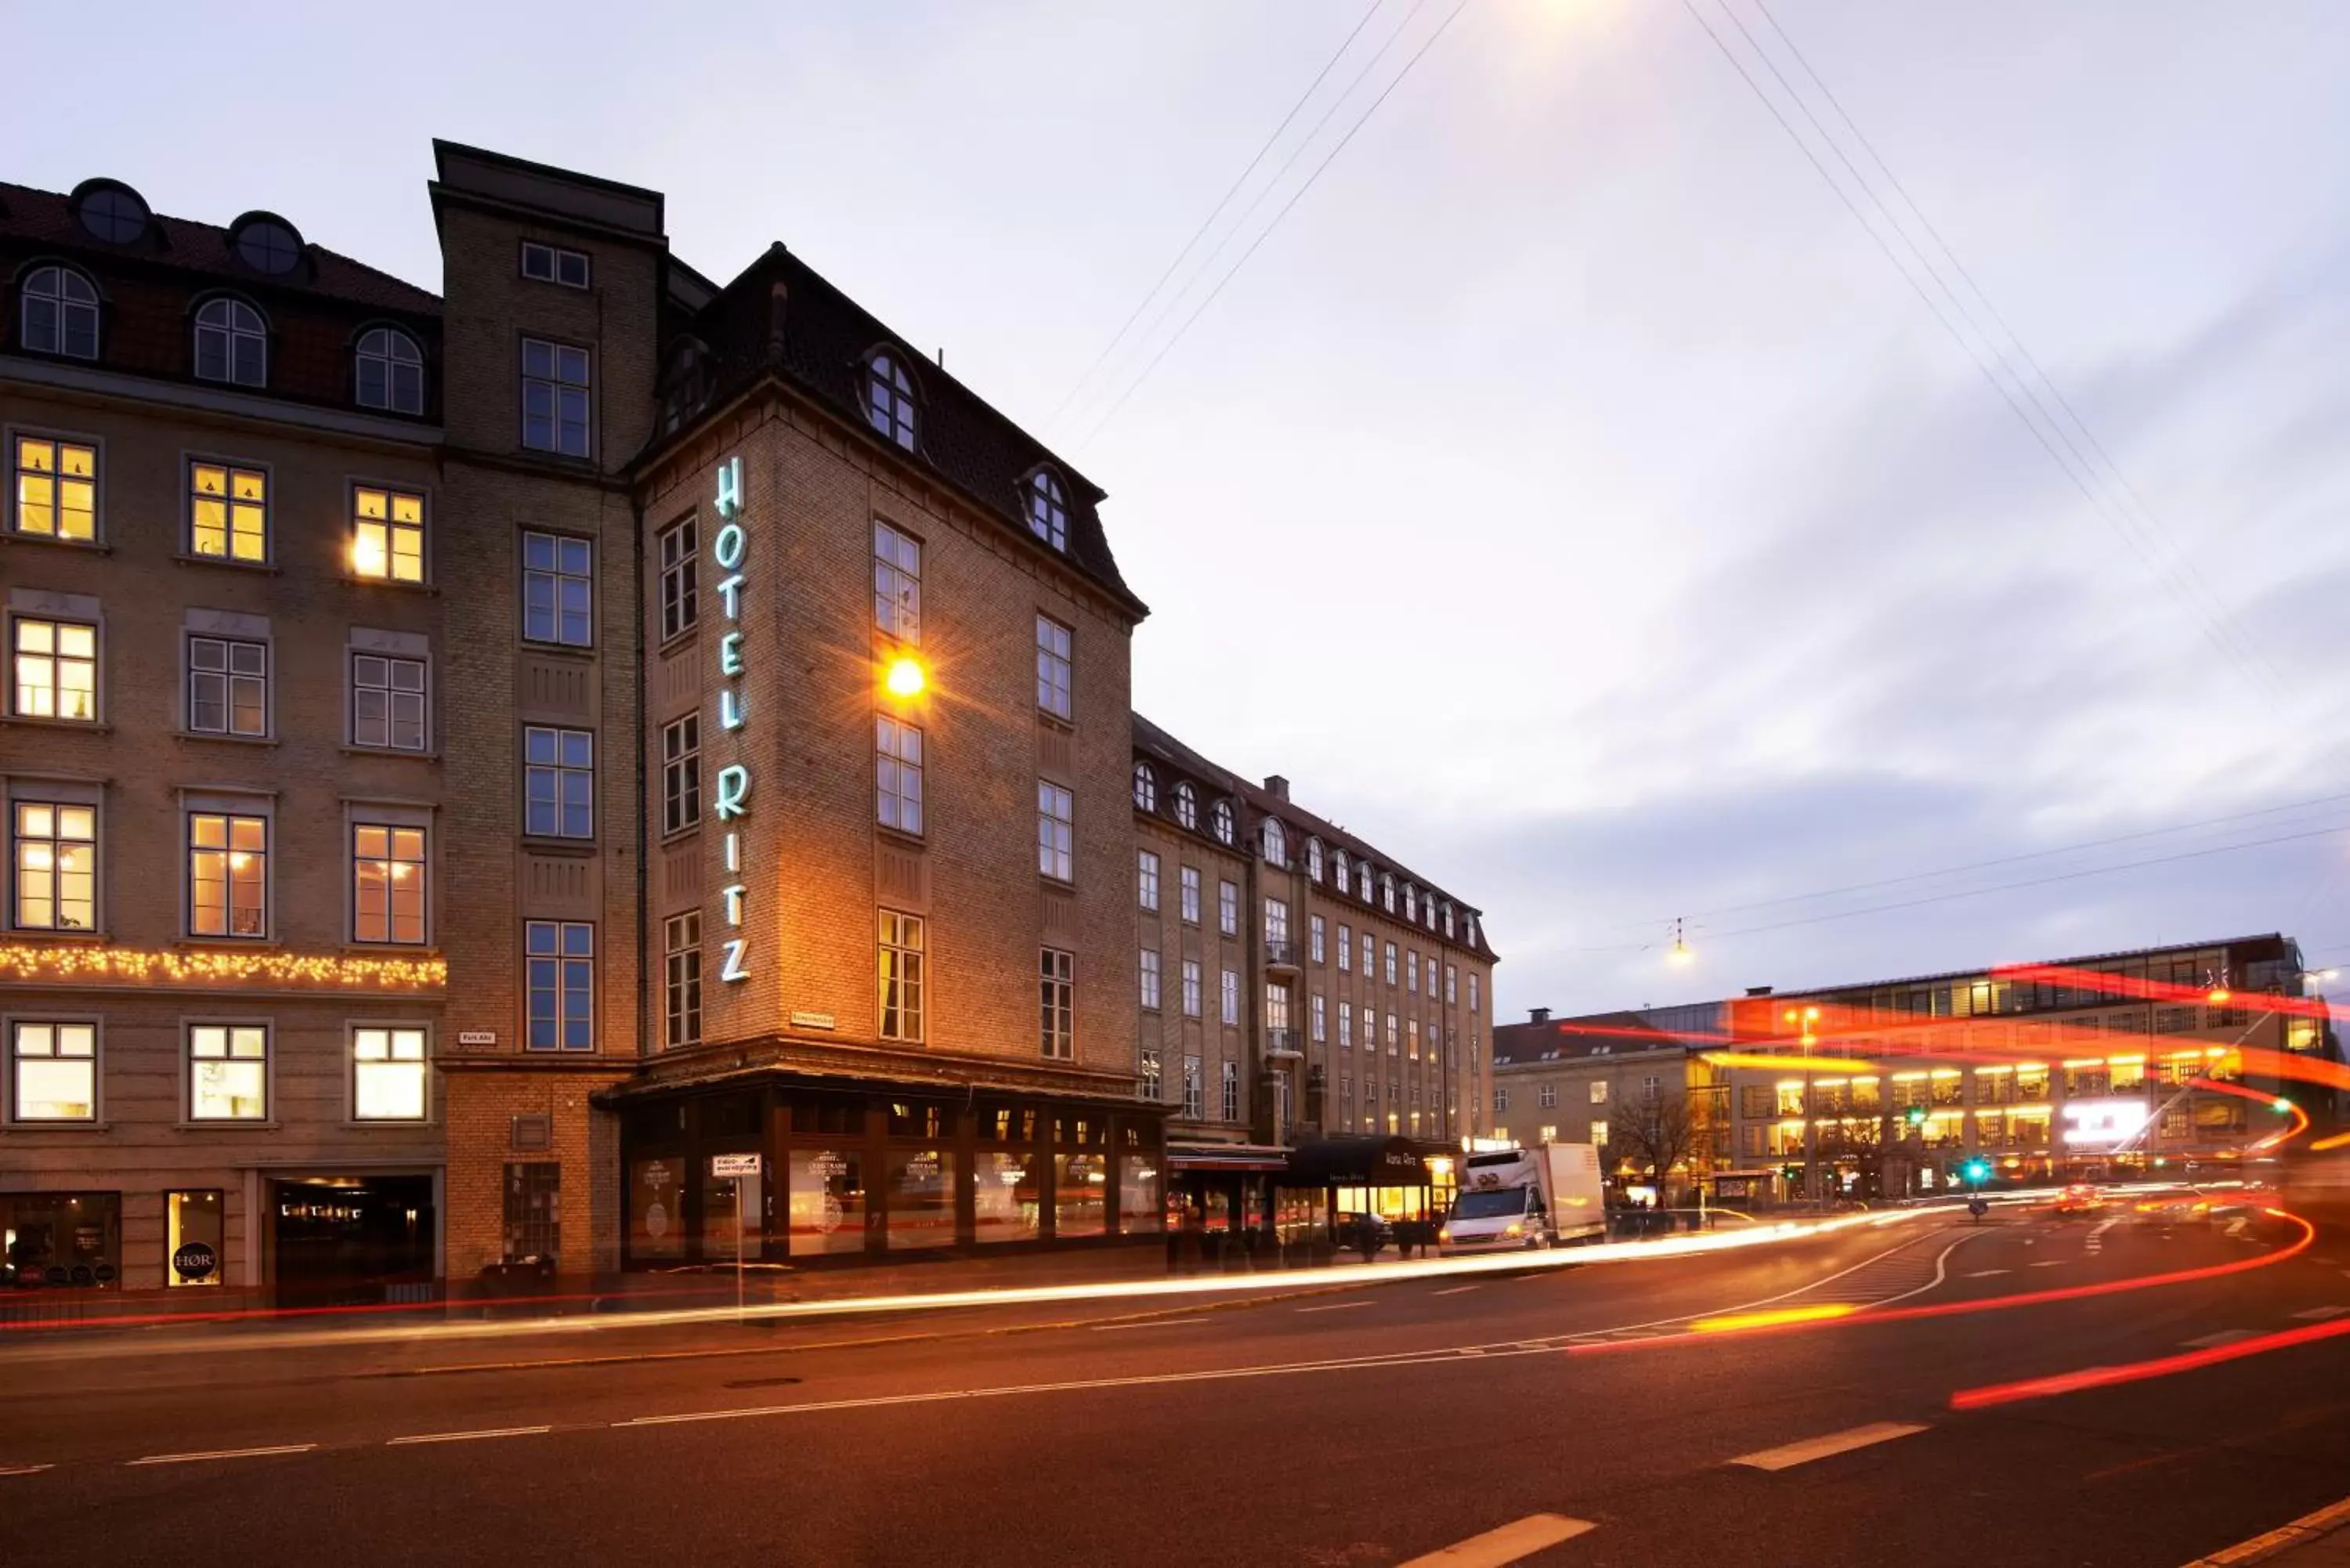 Property Building in Milling Hotel Ritz Aarhus City